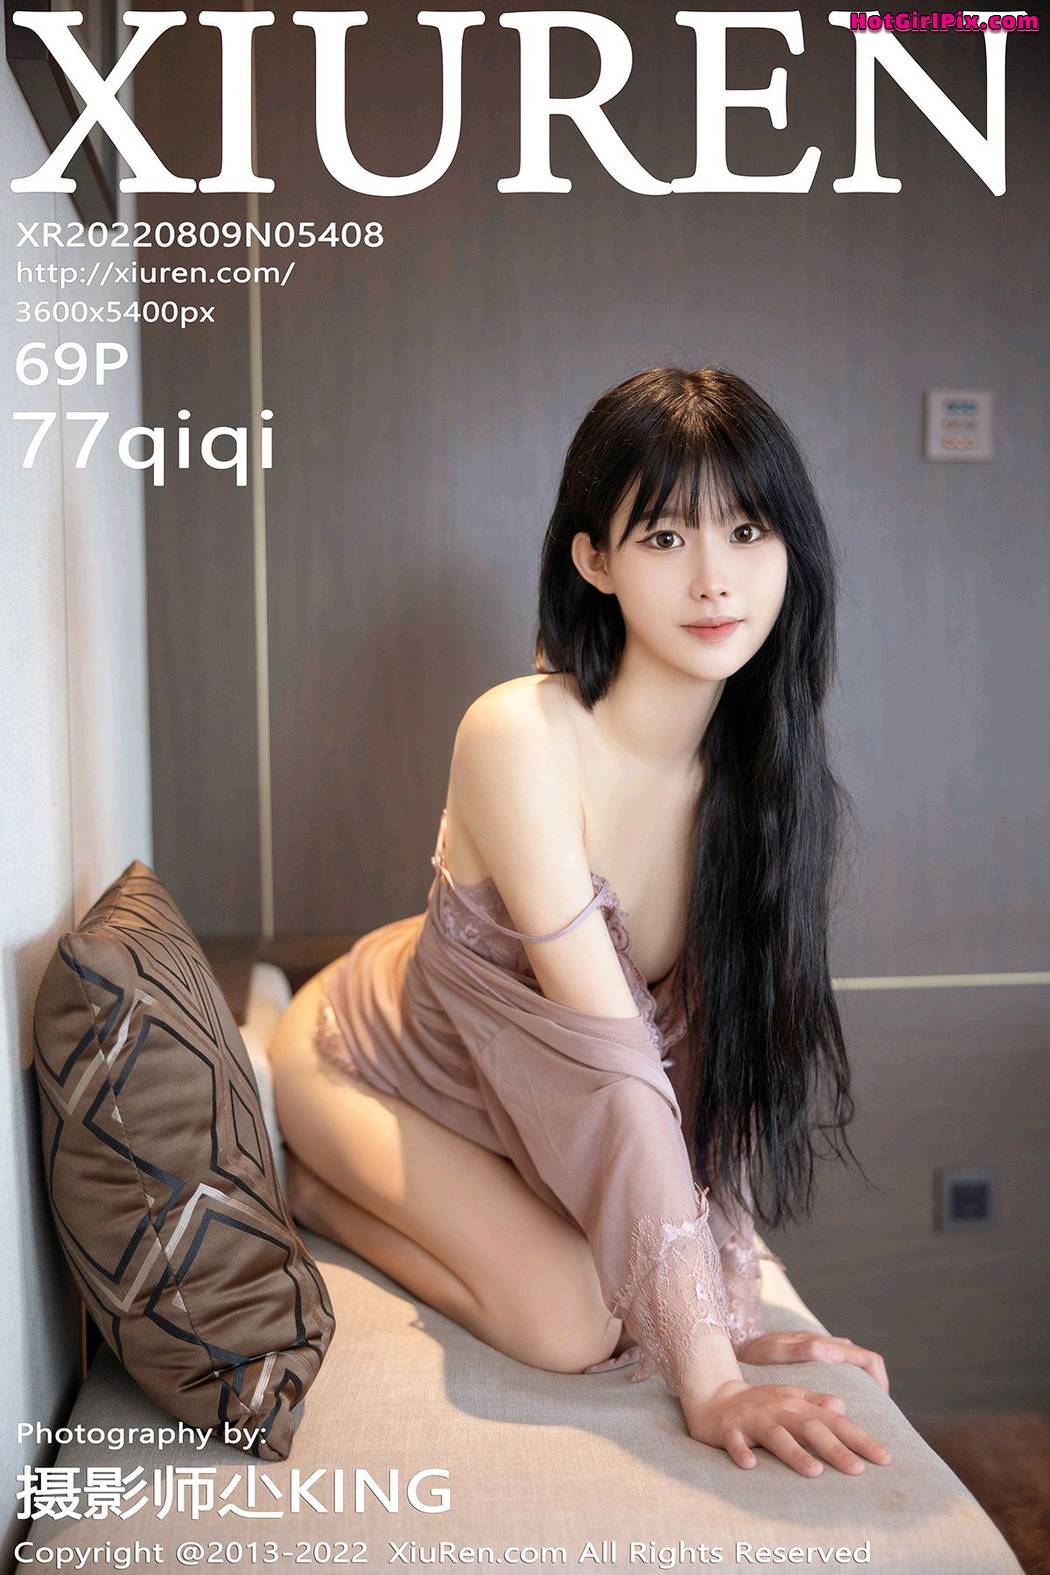 [XIUREN] No.5408 77qiqi Cover Photo